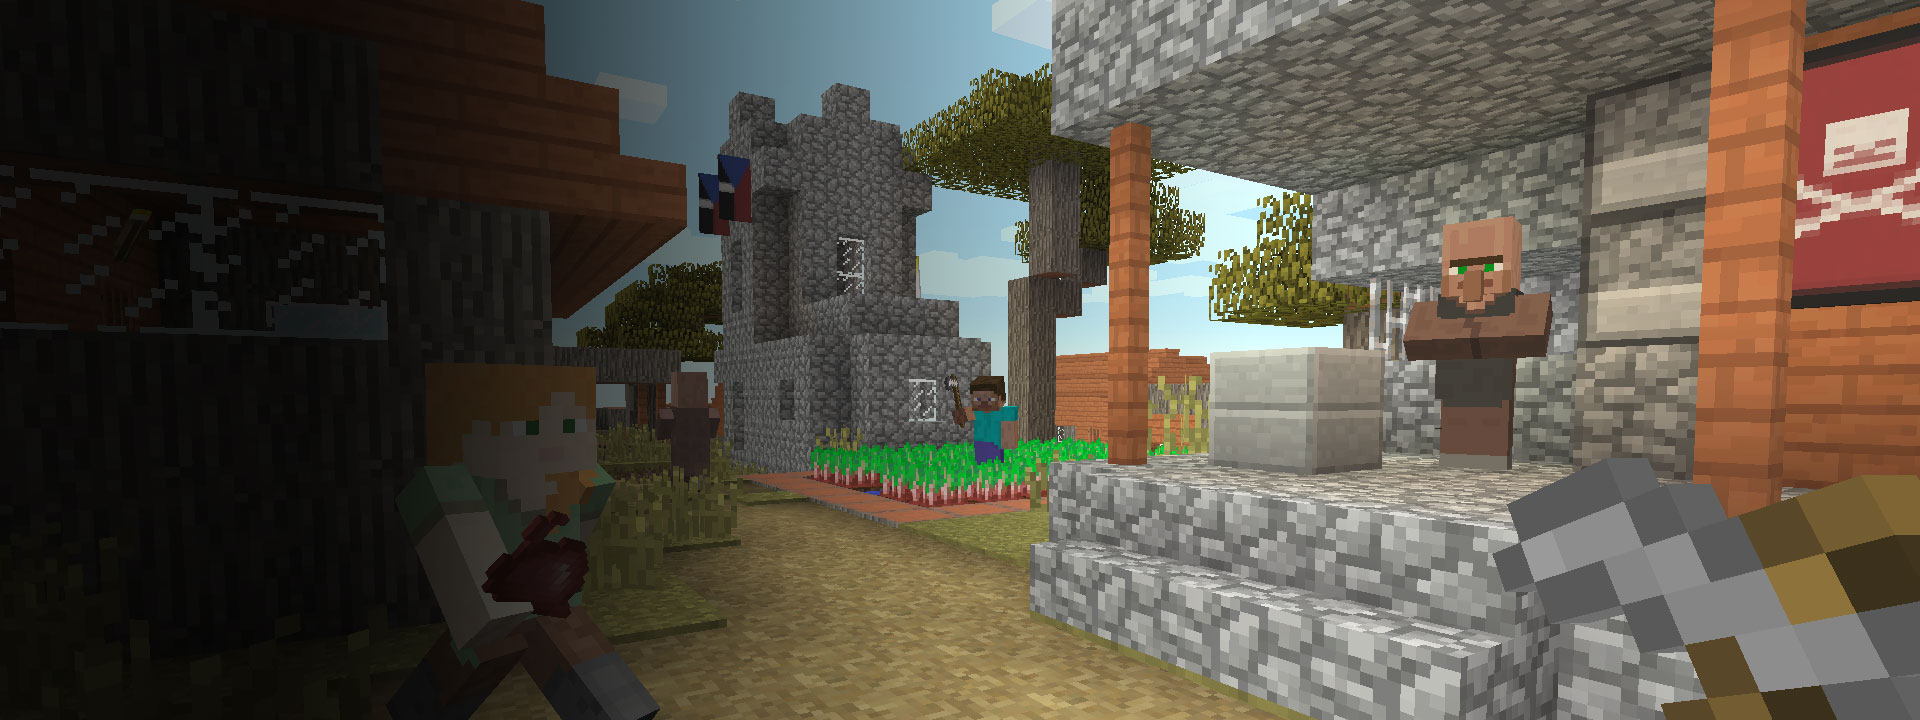 Flera hus och några Minecraft-karaktärer som går i förgrunden.